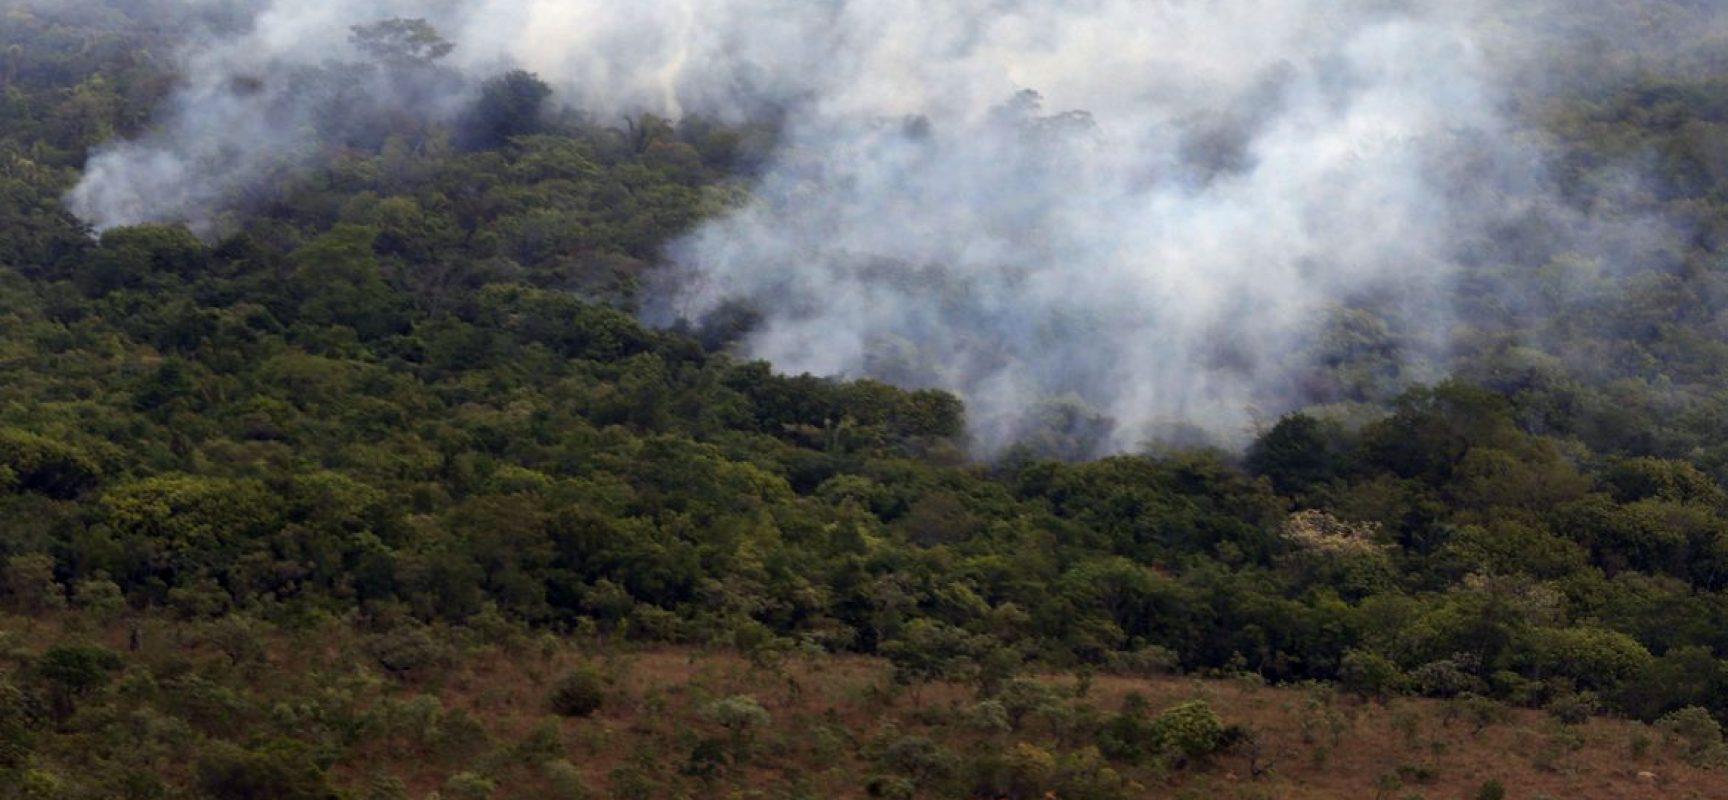 Decreto proíbe queimadas em todo o Brasil por 120 dias